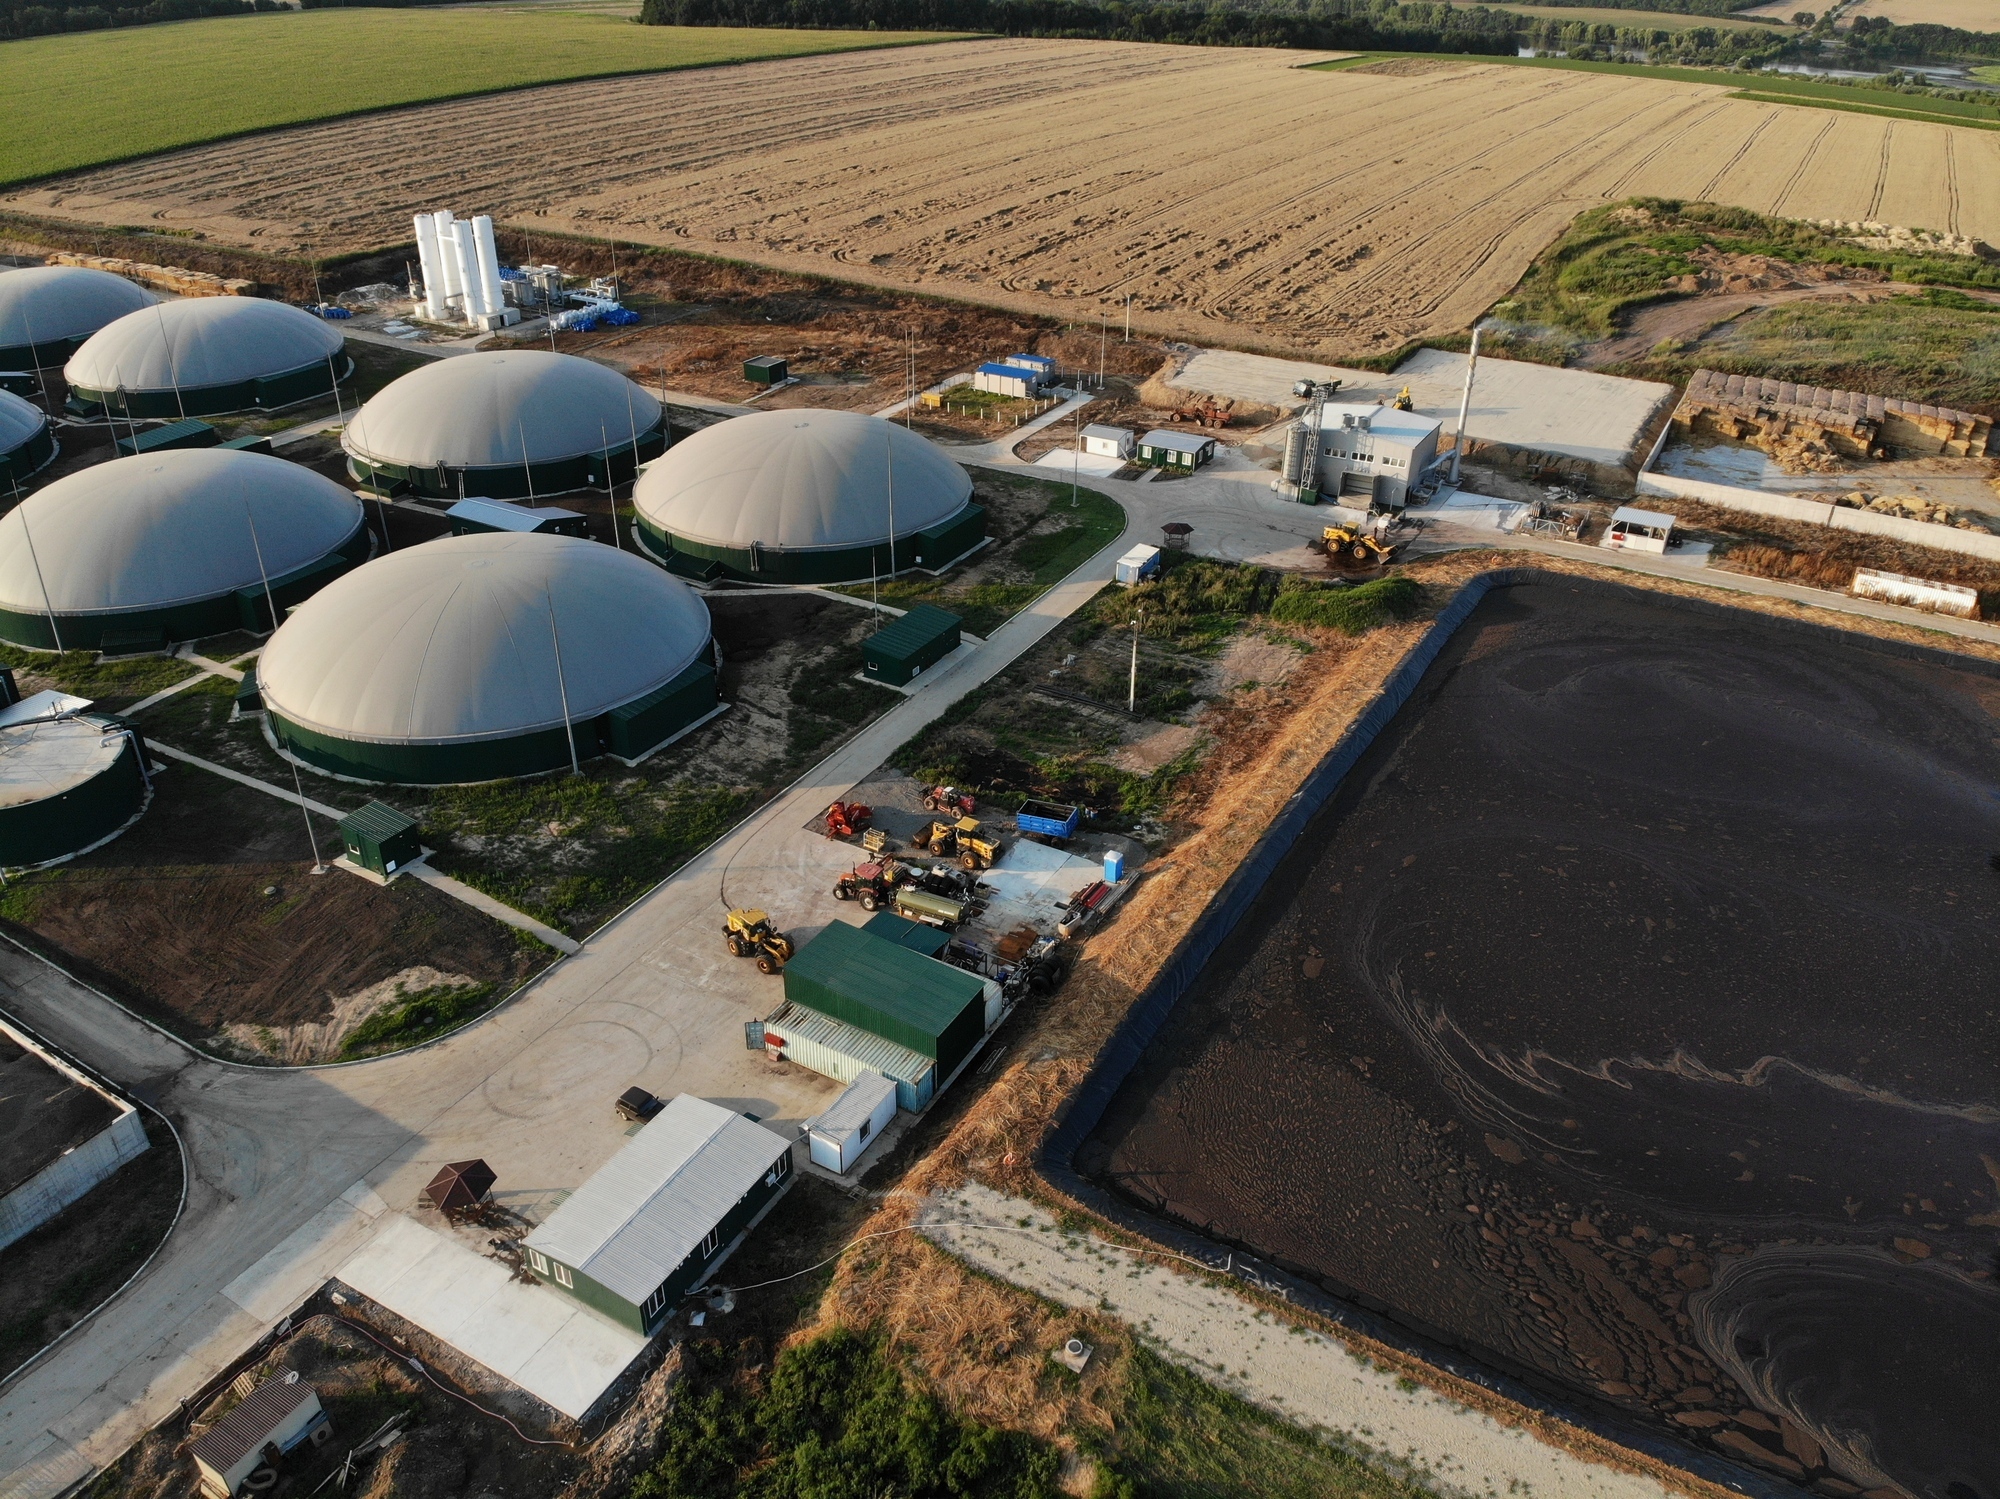 Wiele gospodarstw rolnych korzysta już z biogazowni, ale potencjał dla przemysłu jest ogromny.